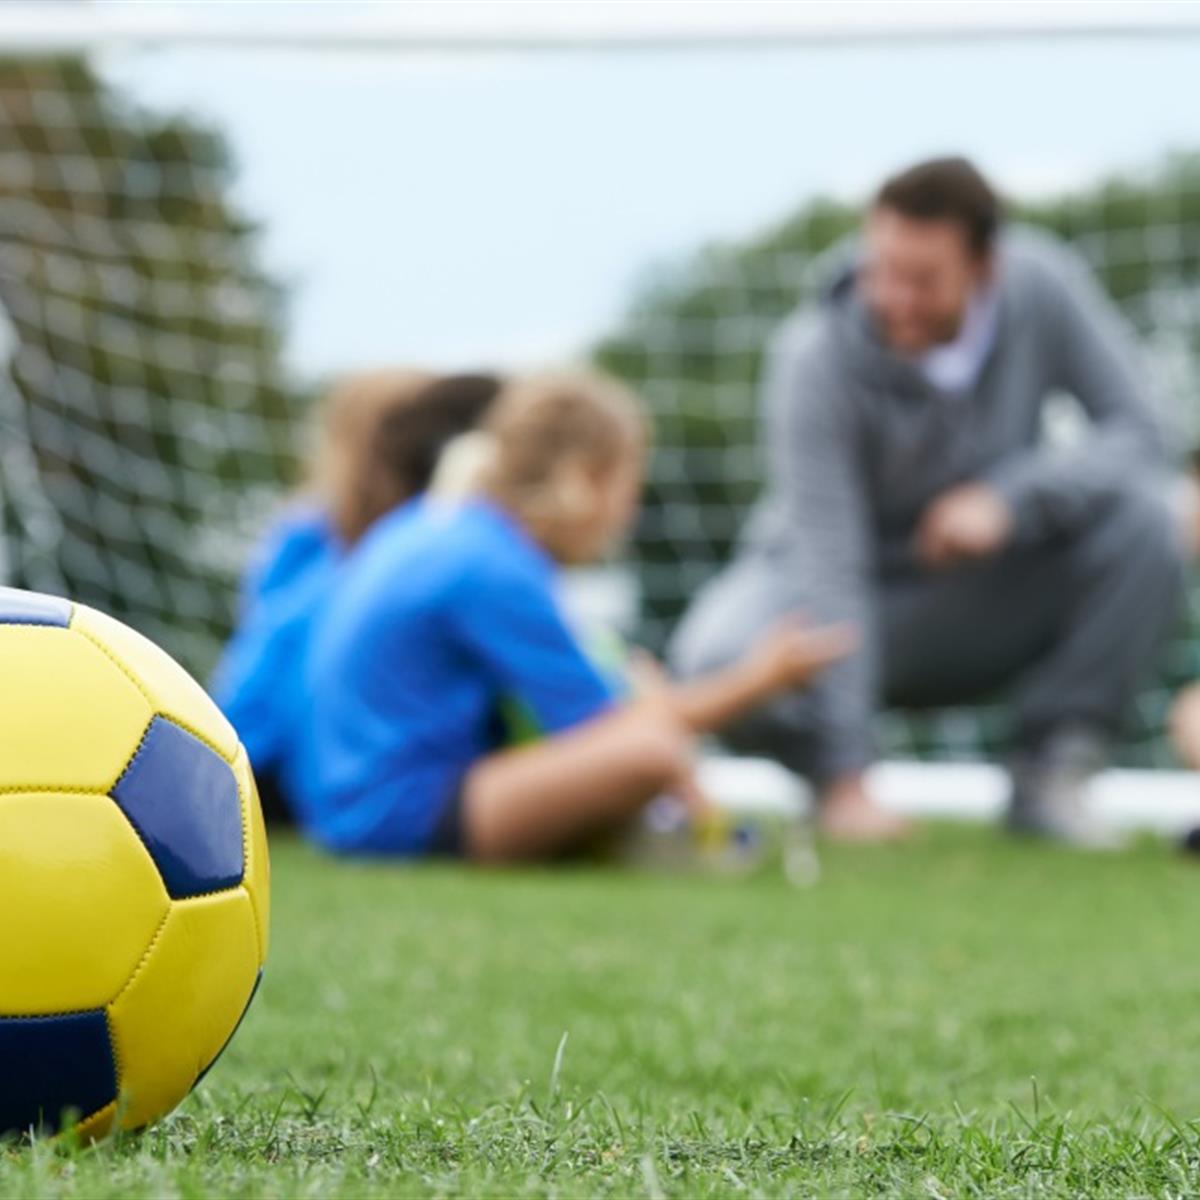 Las lesiones del fútbol los niños van en aumento - ¿Qué pueden hacer padres? - HealthyChildren.org